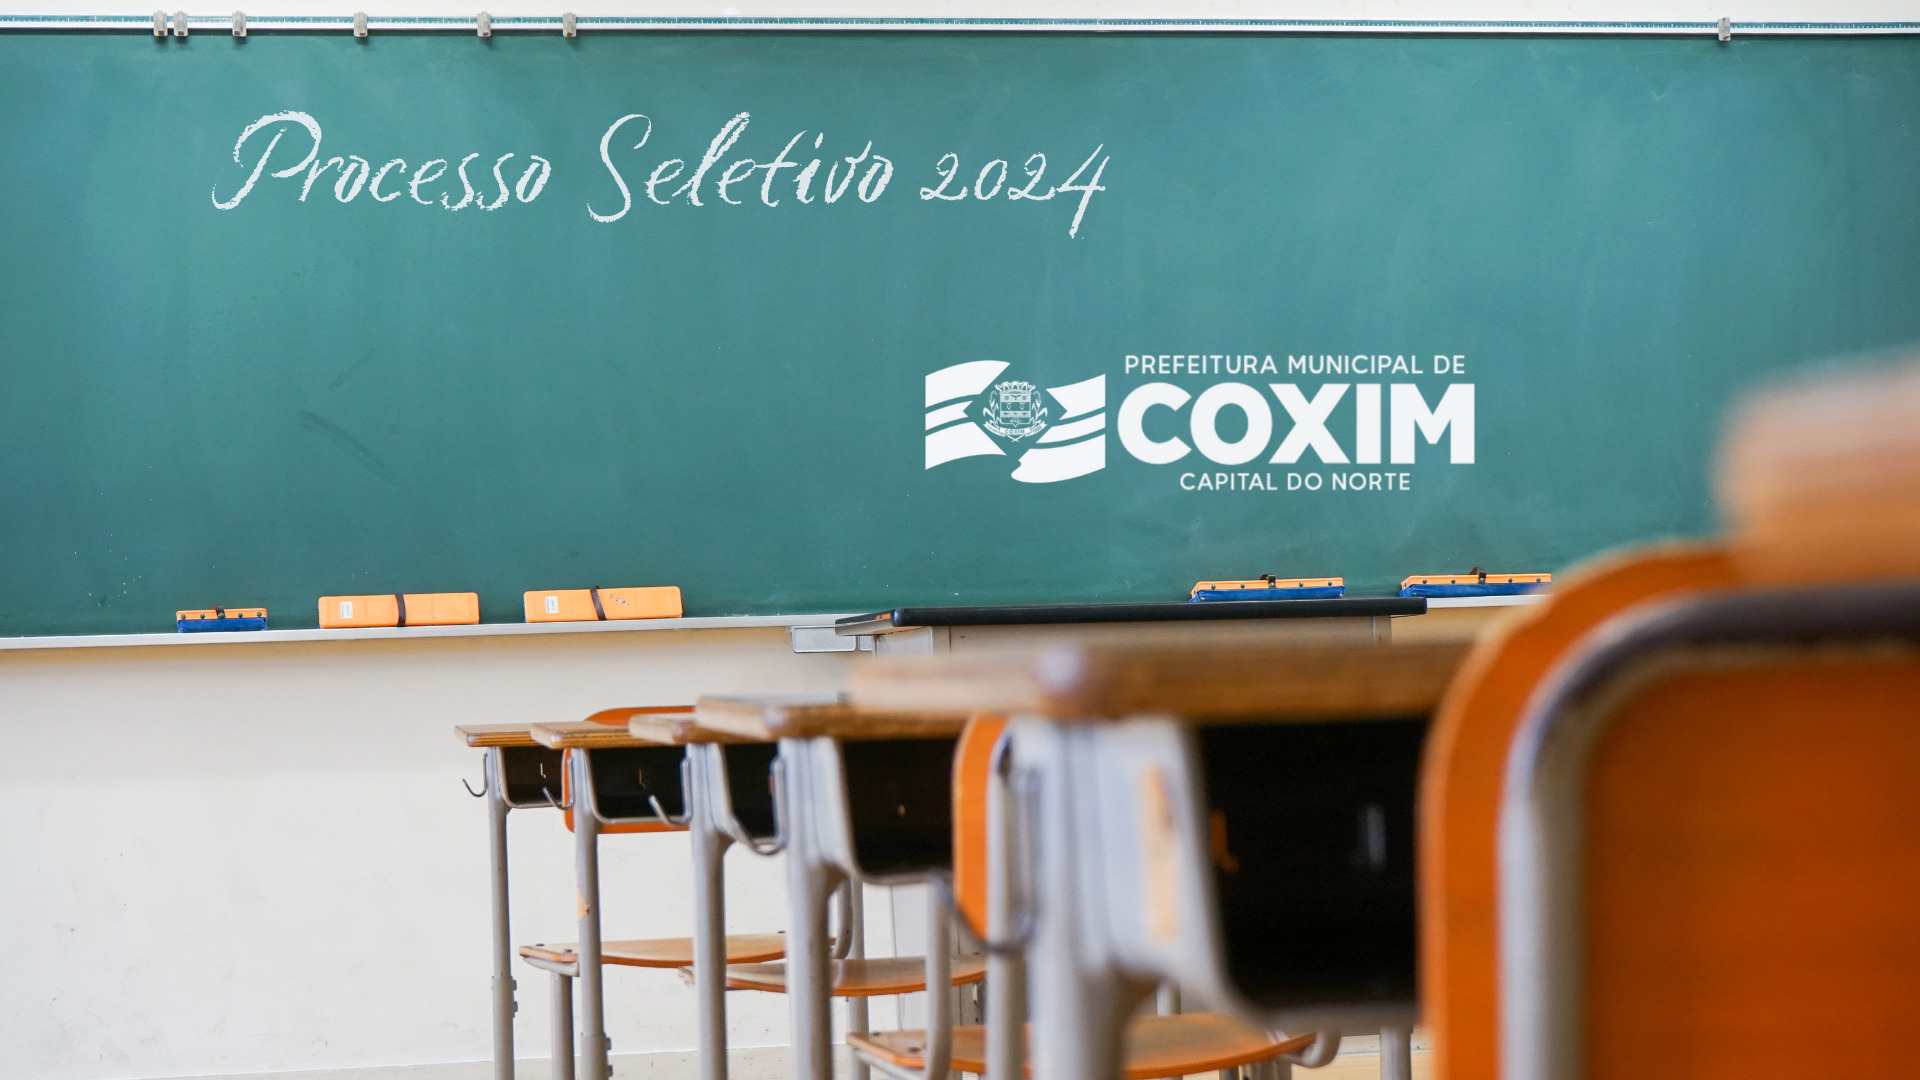 Aprovados em Processo Seletivo para a Educação devem se apresentar até o dia 19 na Prefeitura de Coxim